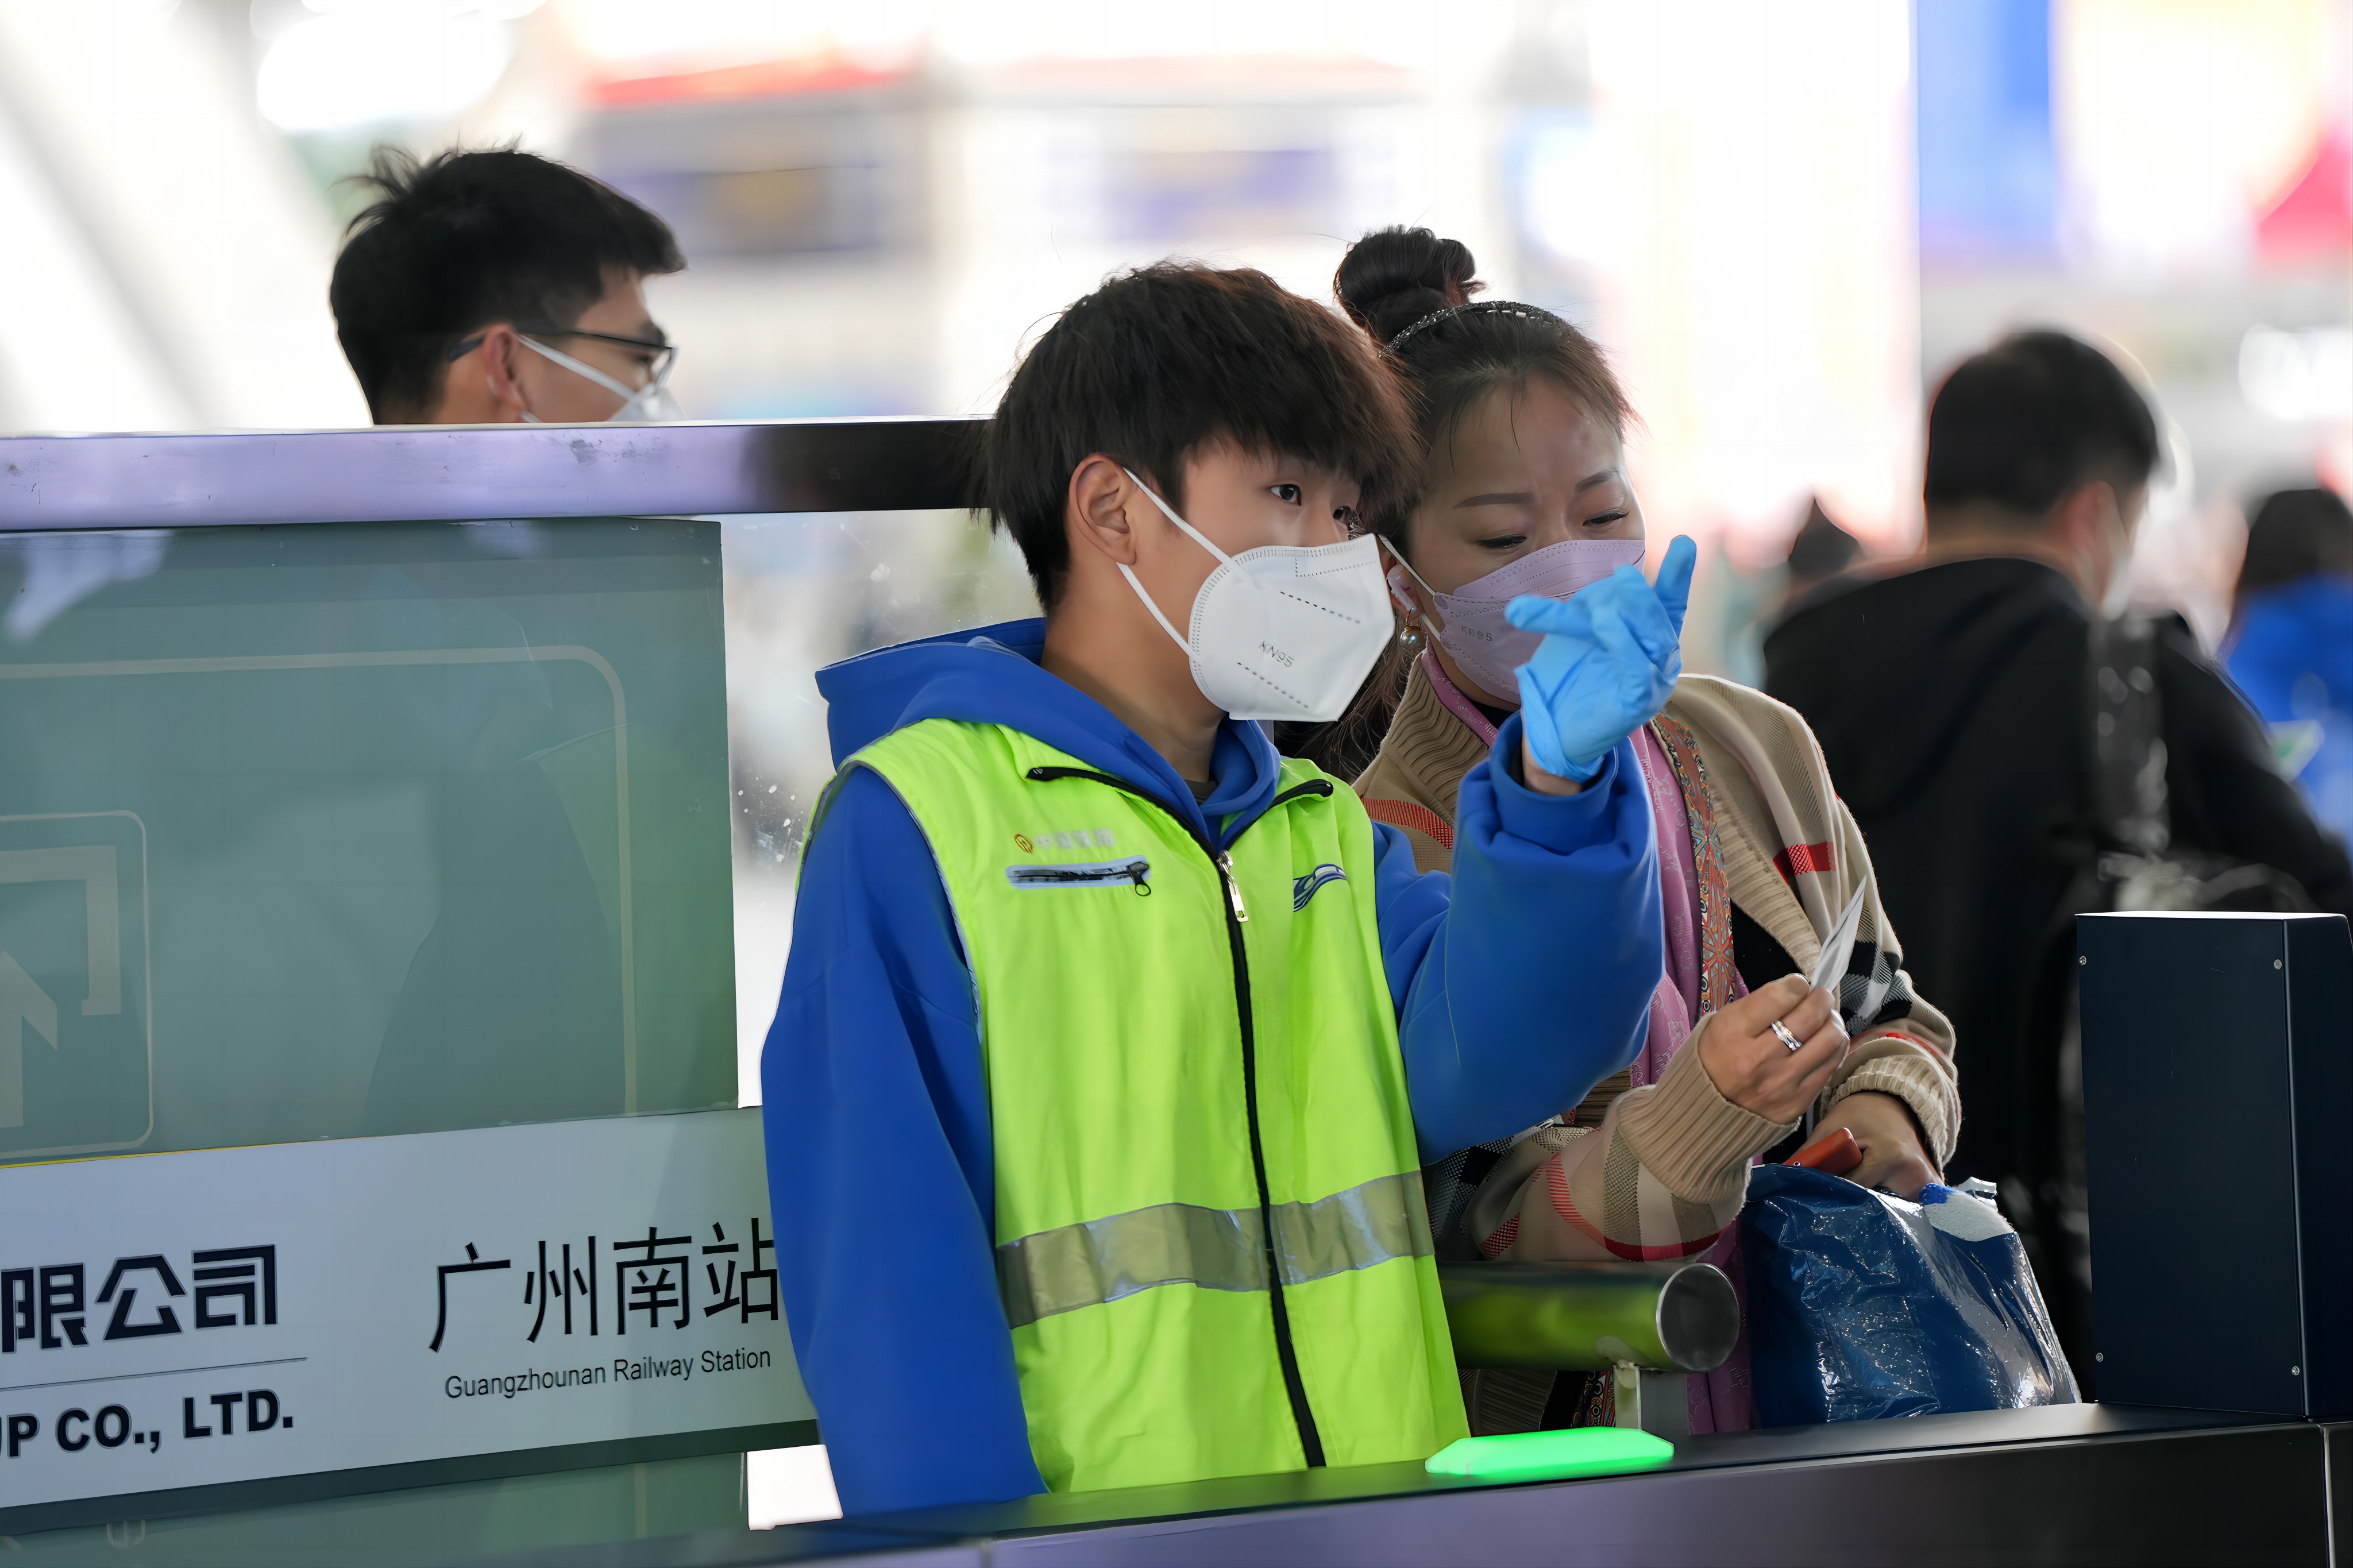 广铁预计发送旅客173万人次